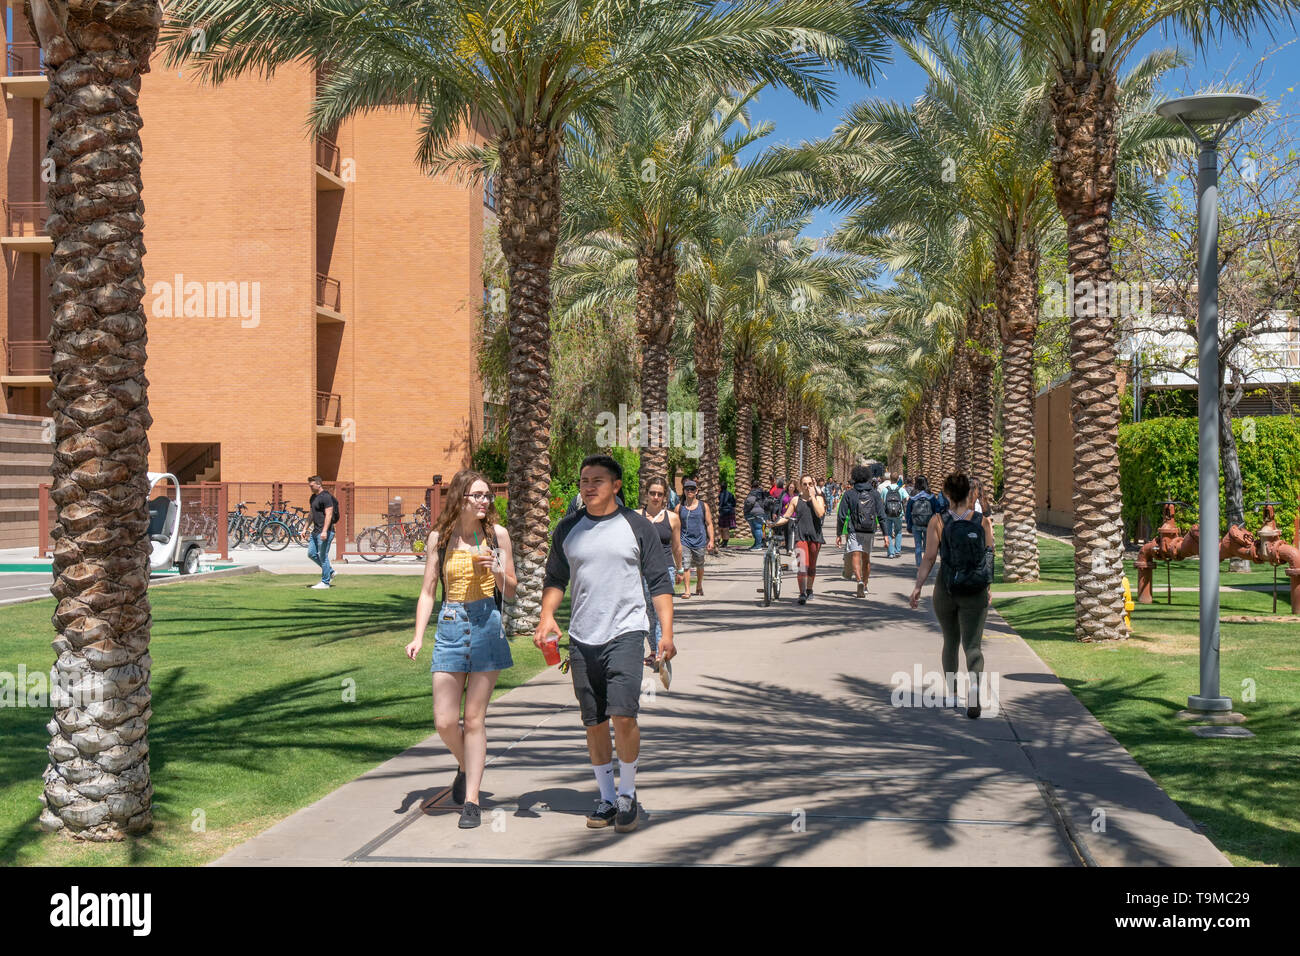 TEMPE, AZ/USA - 10. APRIL 2019: Nicht identifizierte Personen auf dem Campus der Arizona State University. Stockfoto